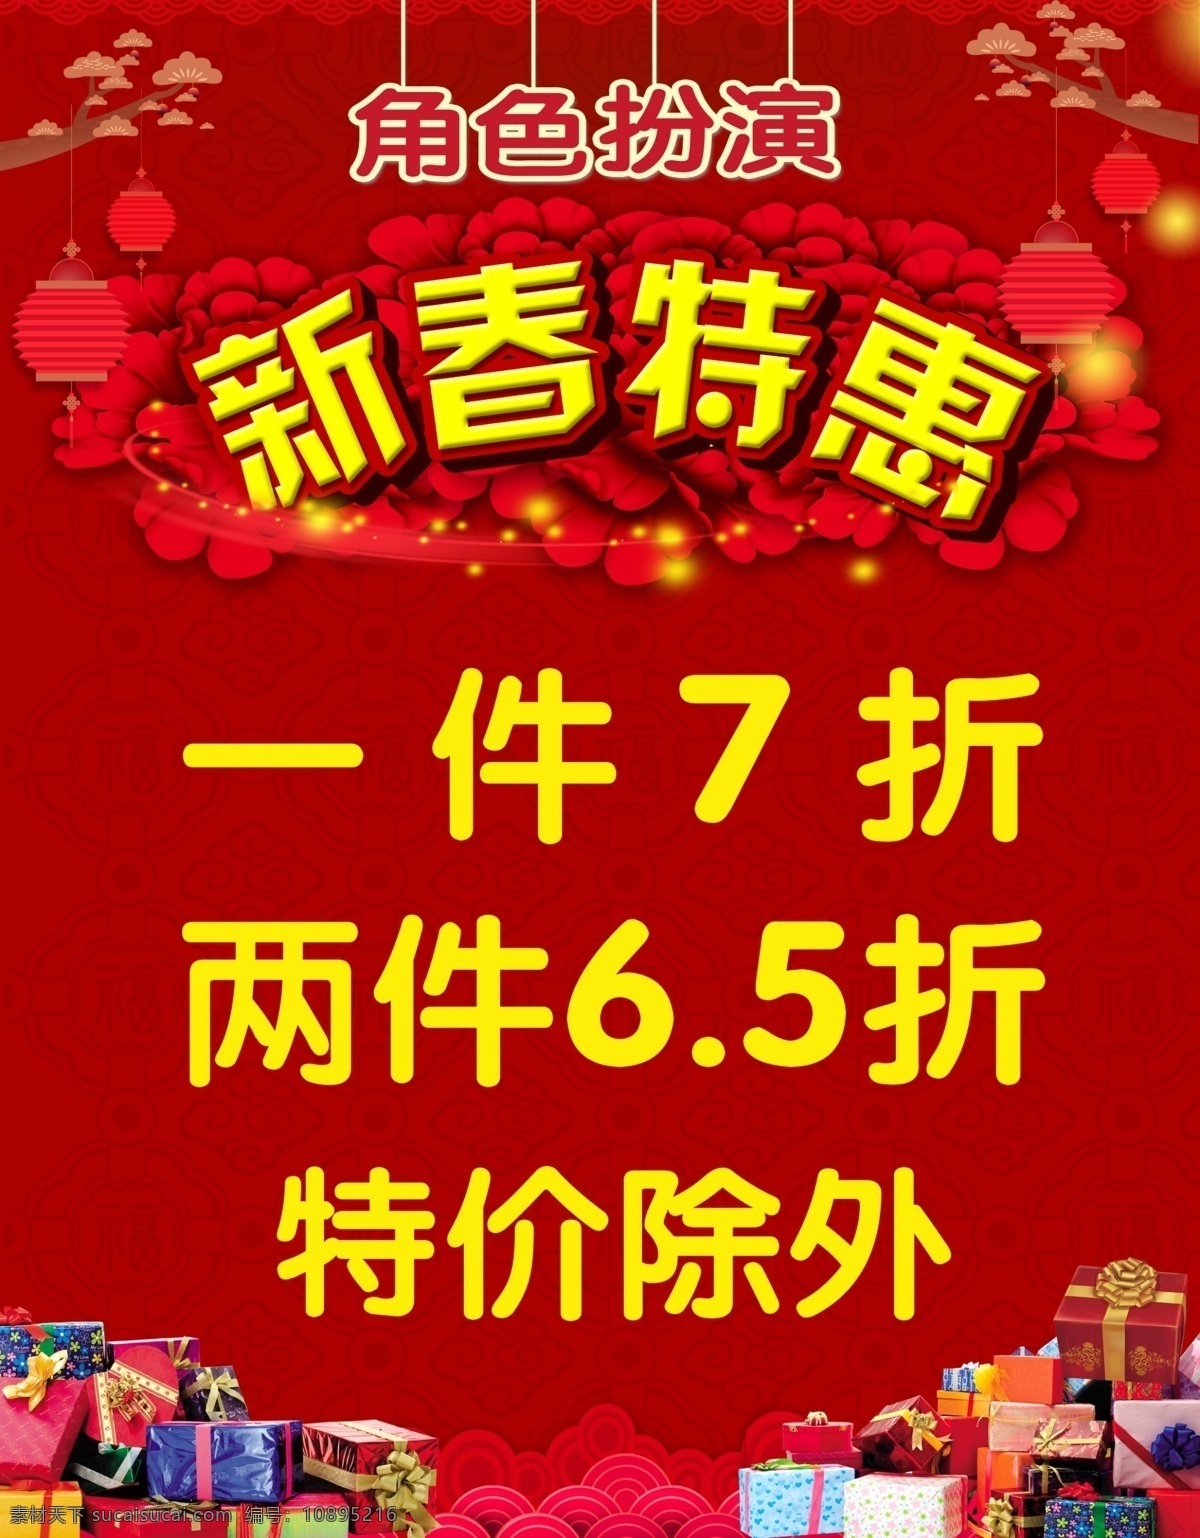 新春特惠 喜庆海报 红色喜庆底色 黄色字 礼物盒 字体 室内广告设计